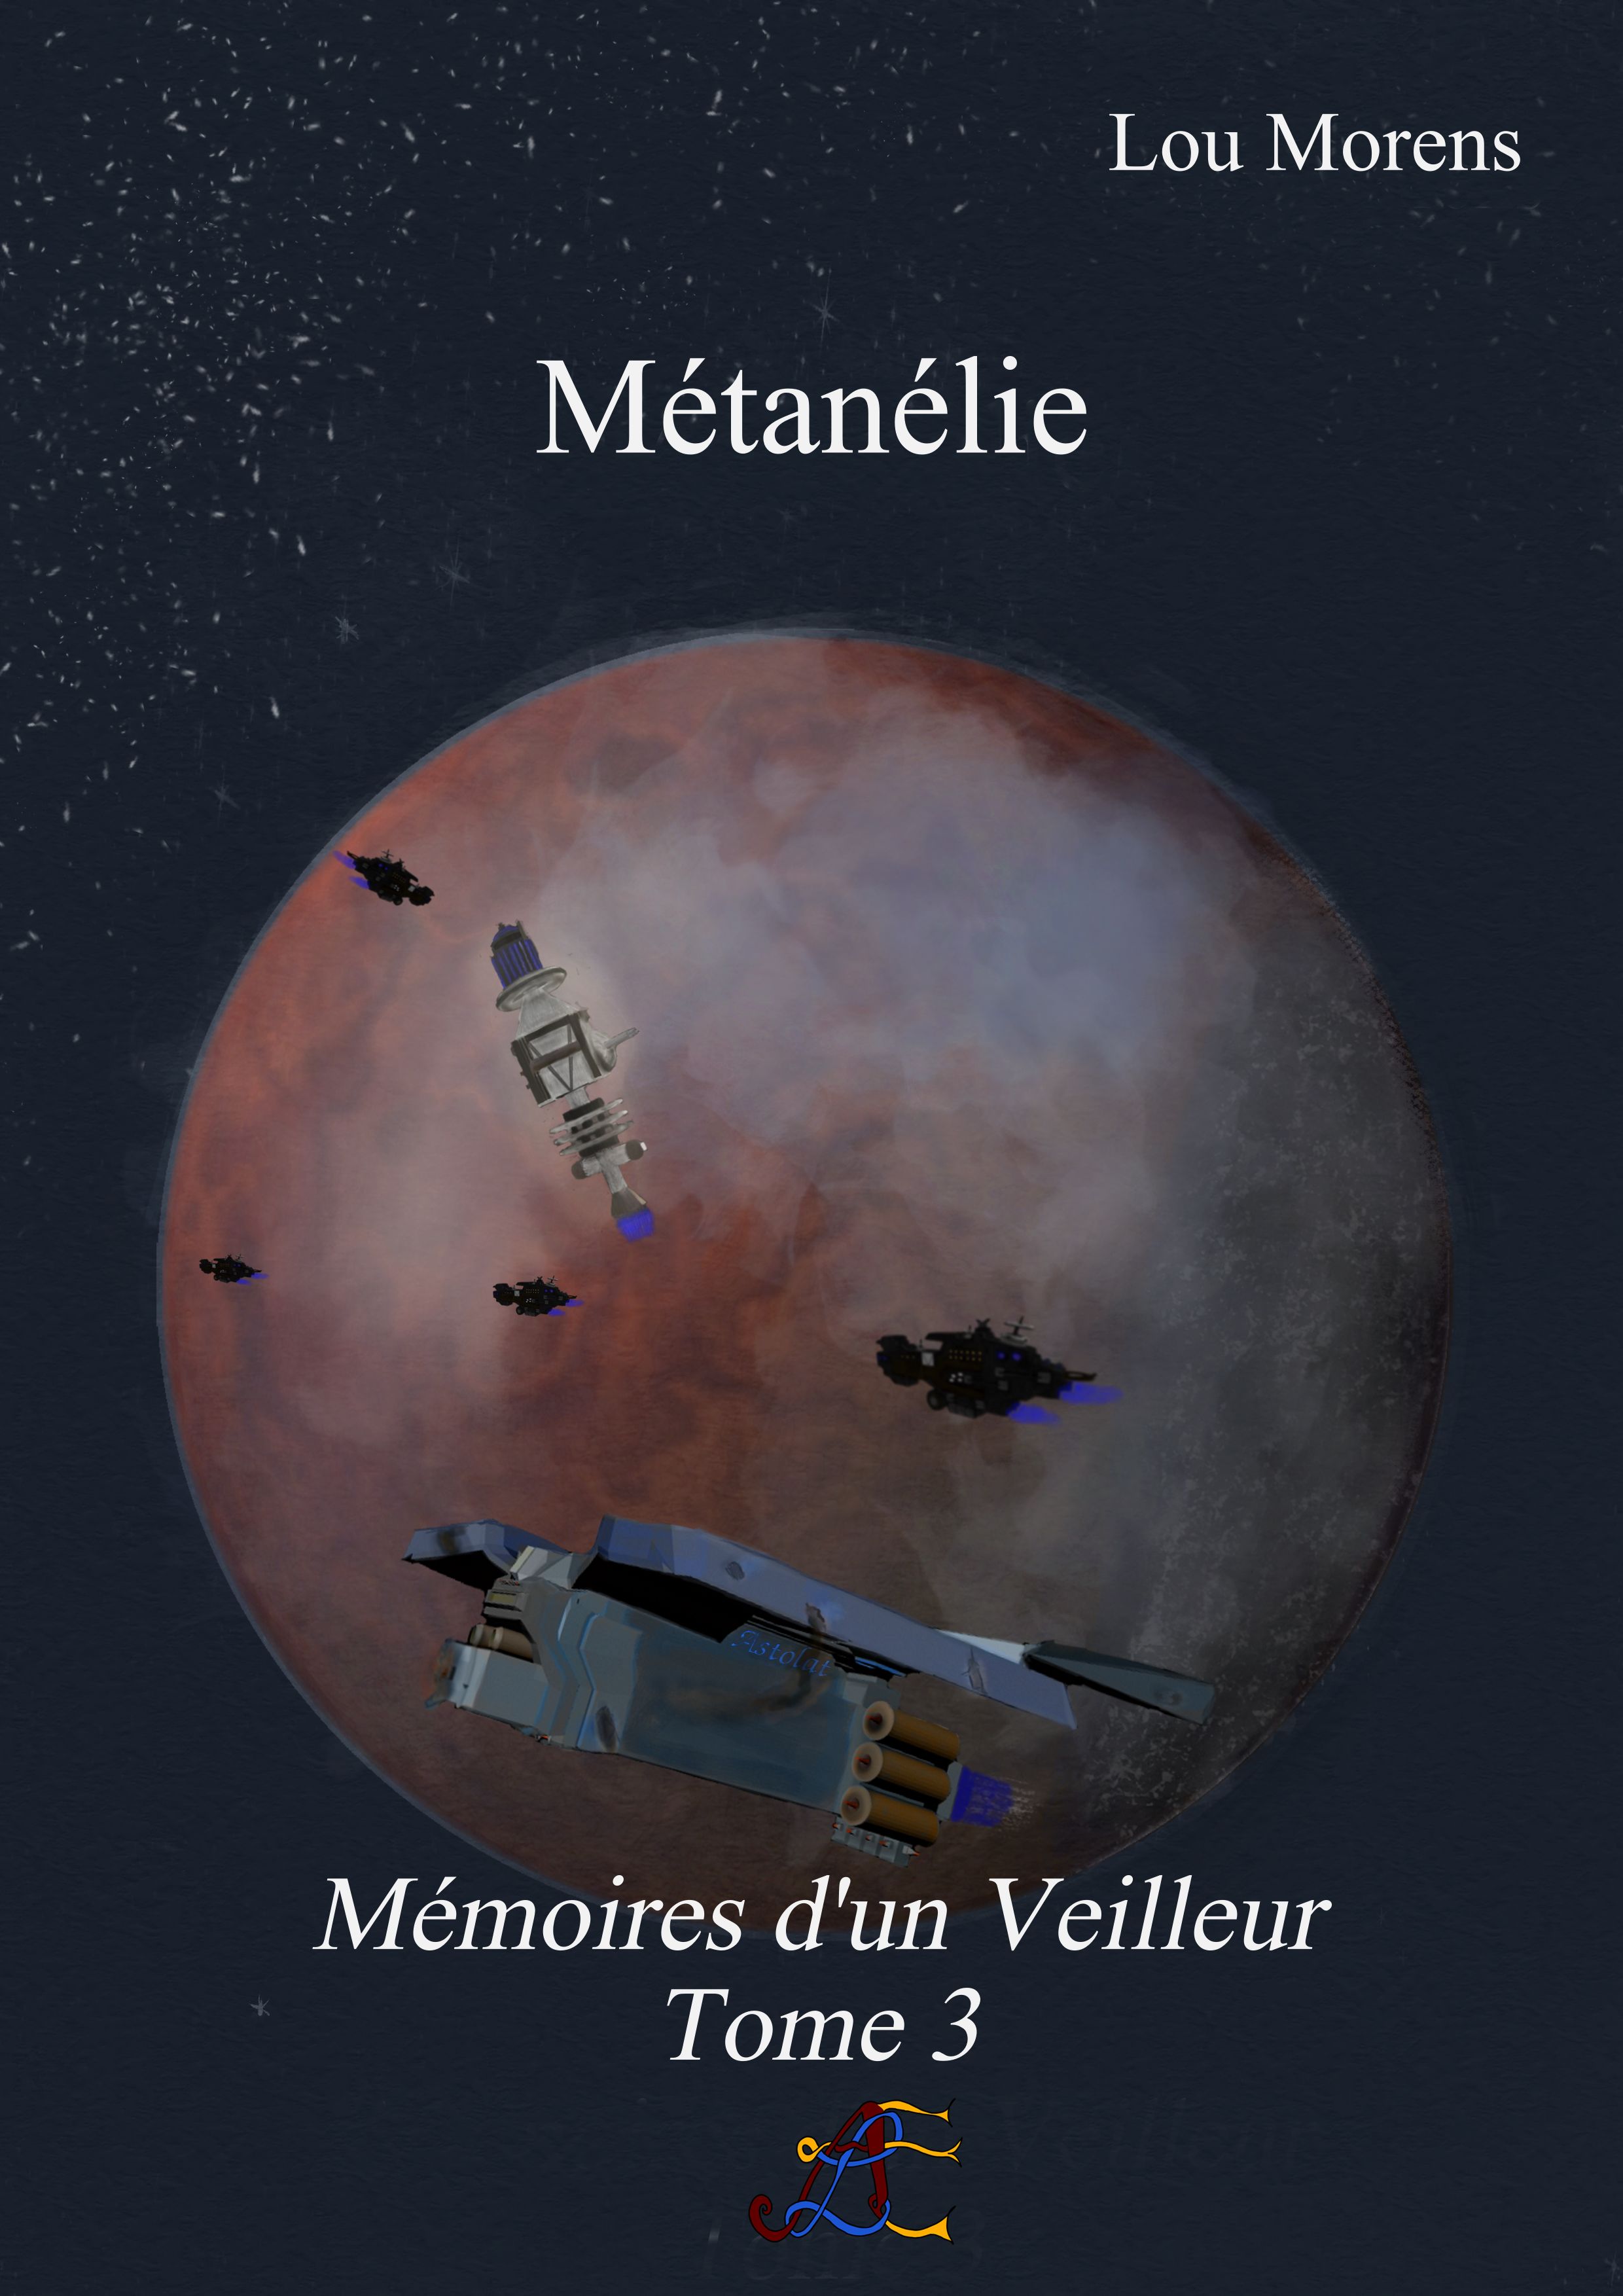 Couverture officielle du Tome 3 des Mémoires d'un Veilleur - Métanélie